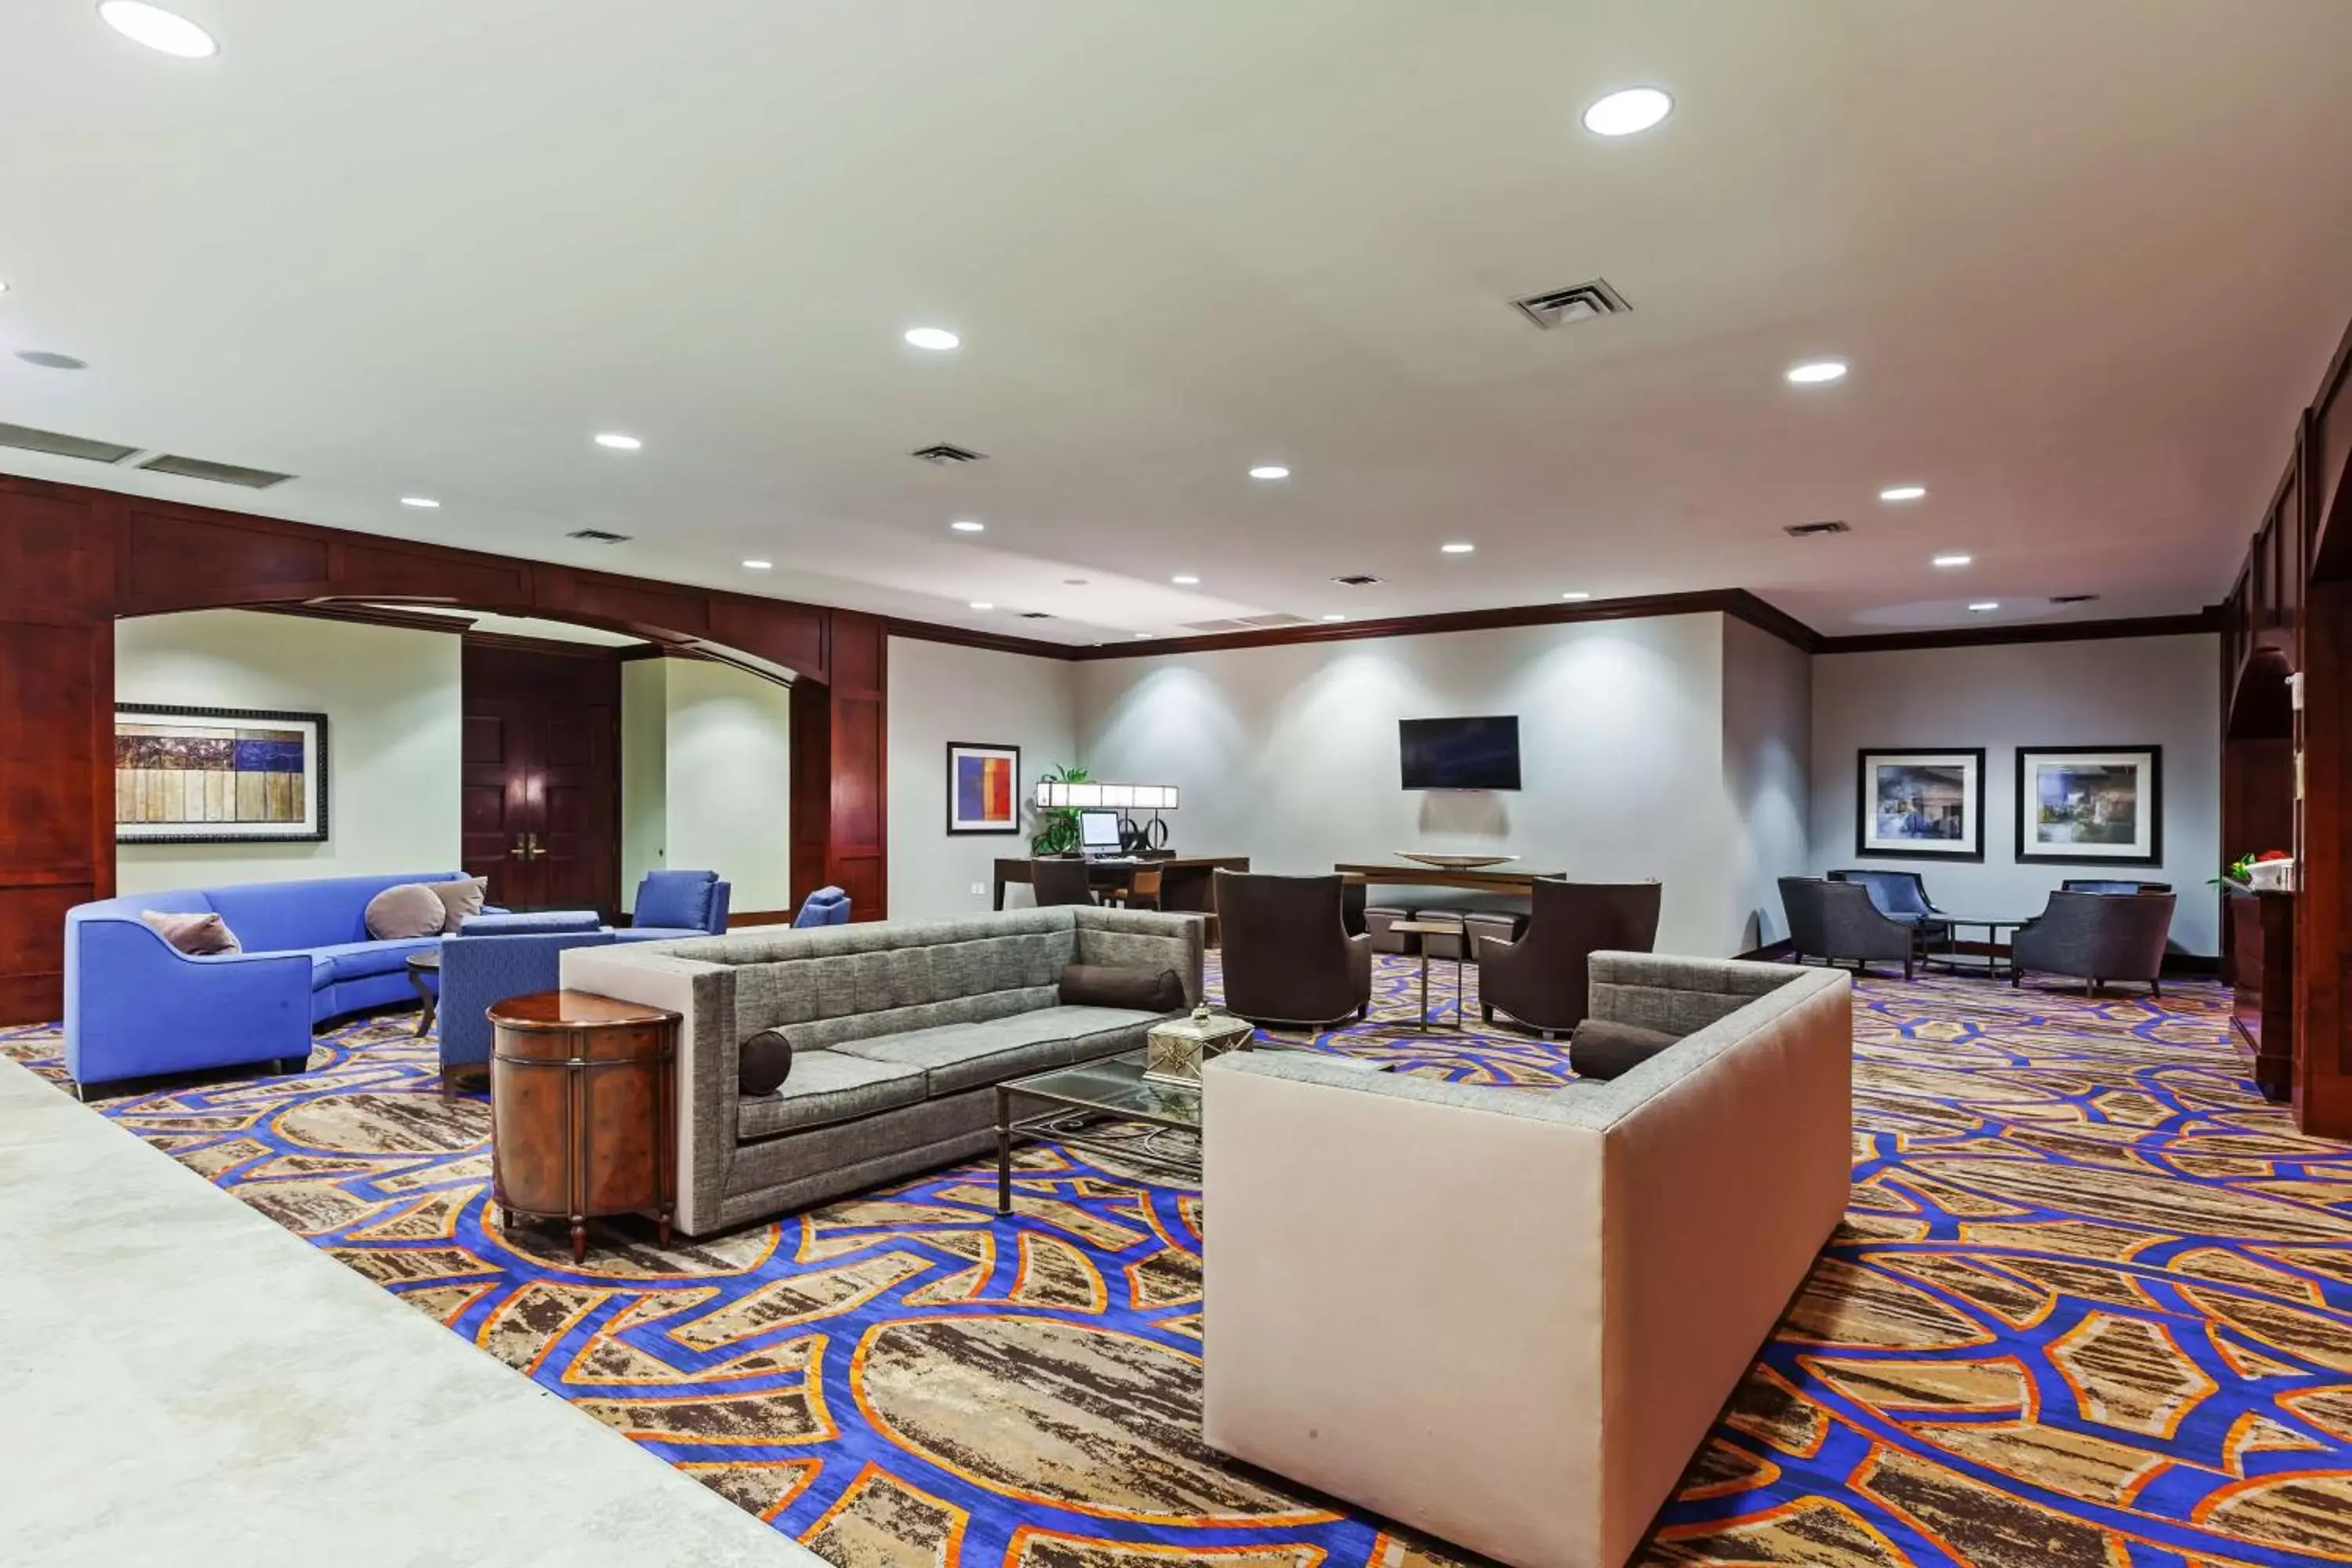 Lobby or reception in Hilton Waco